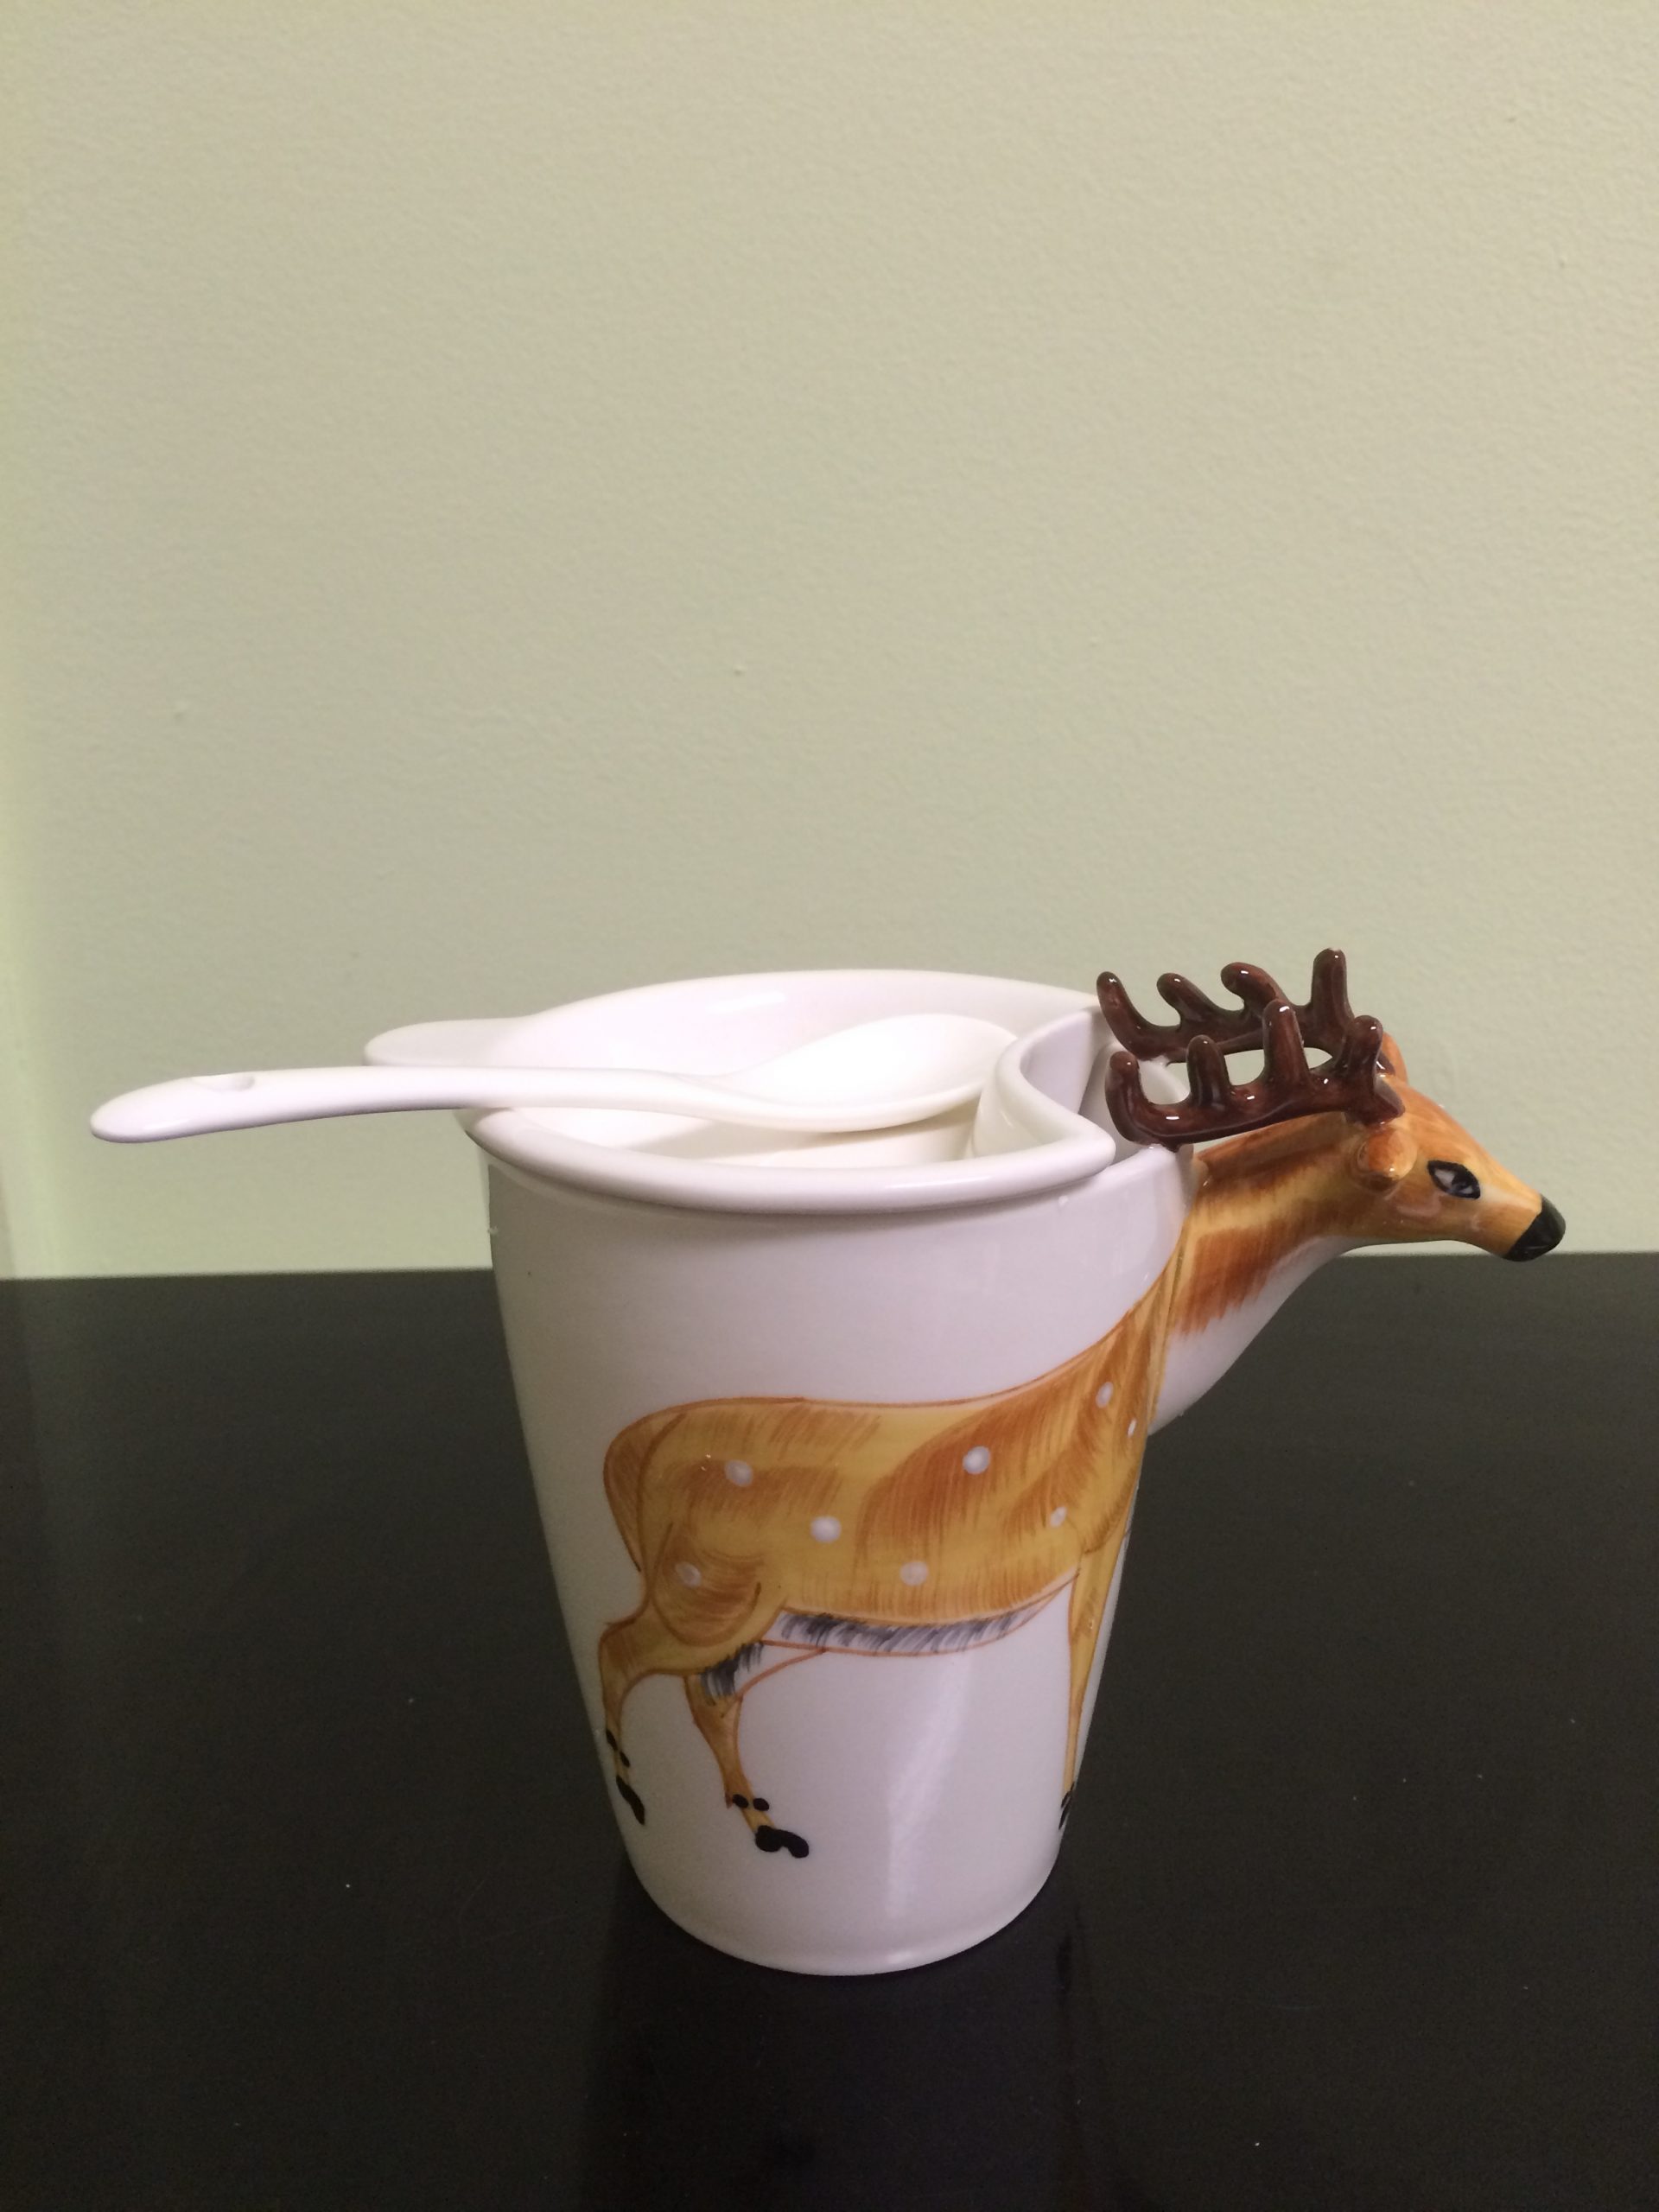 Ceramic 3D Animal Shape Tea/Coffee Cup with Lid & Spoon. Deer